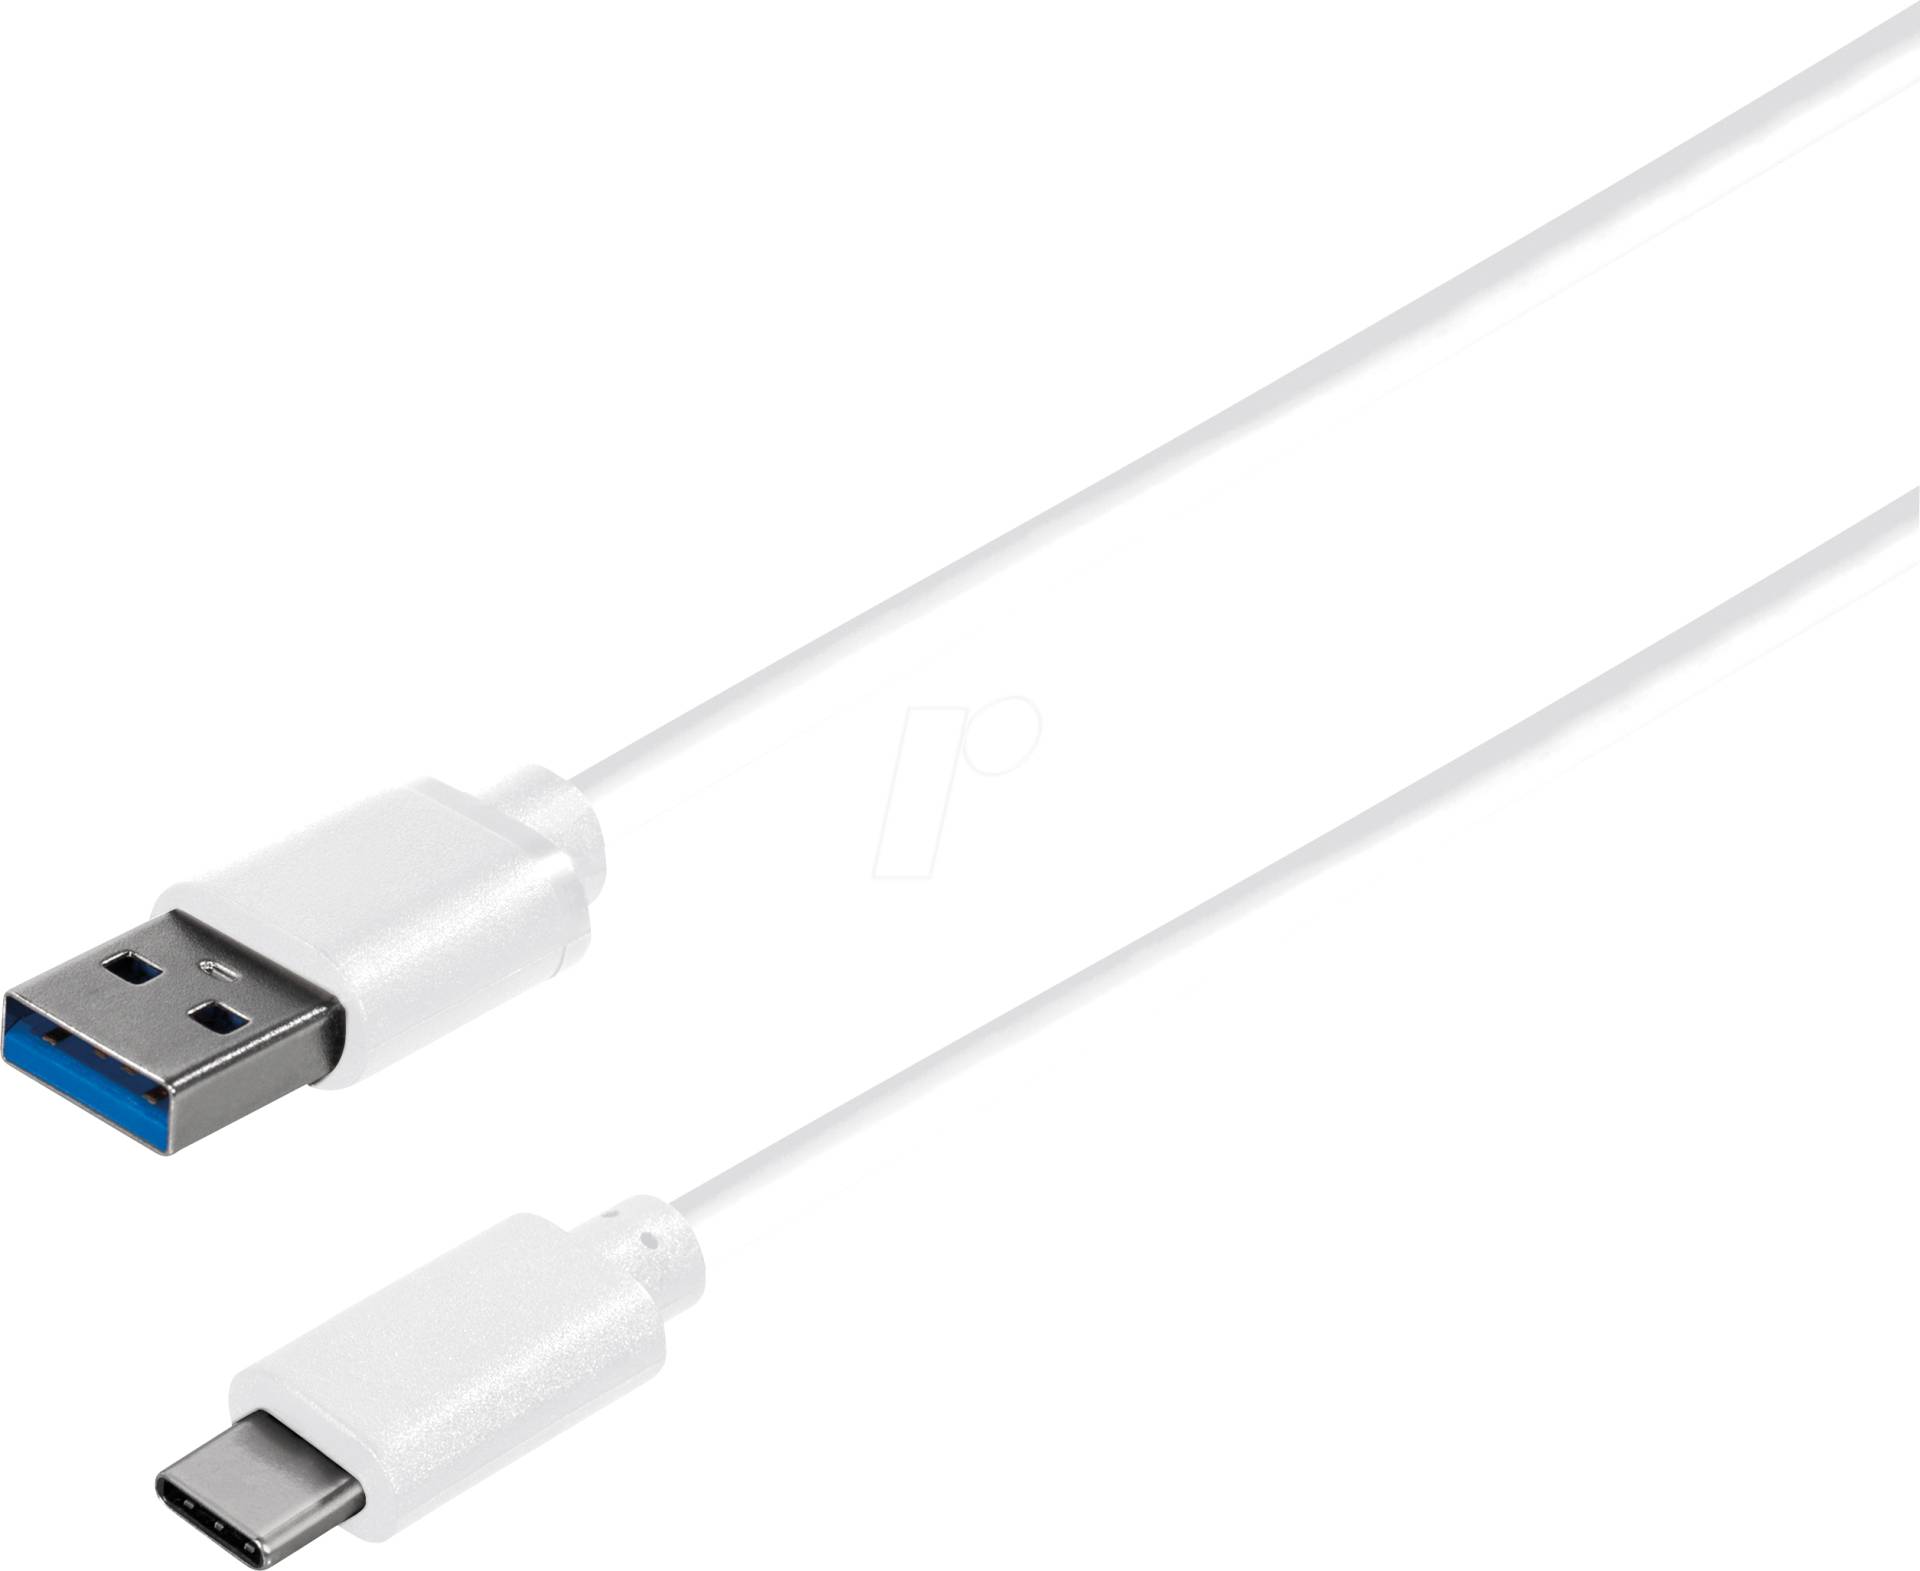 MATR C530-1WL - USB 3.0 Kabel, A Stecker auf C Stecker, weiß, 1 m von MAXTRACK